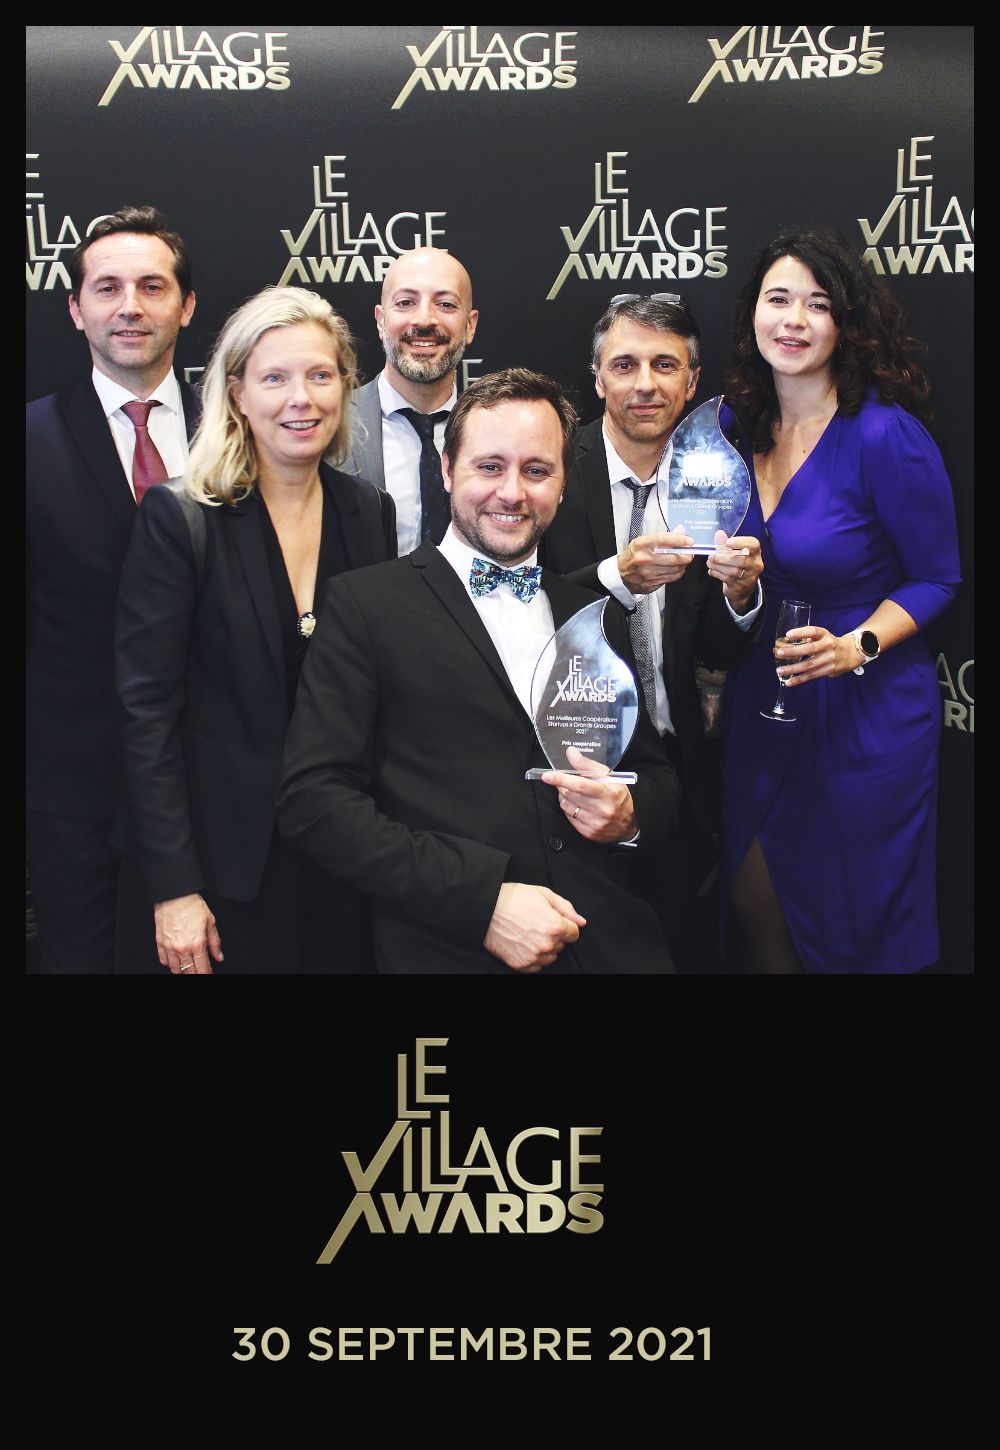 Prix de la Collaboration inattendue remis à la France ©Village awards